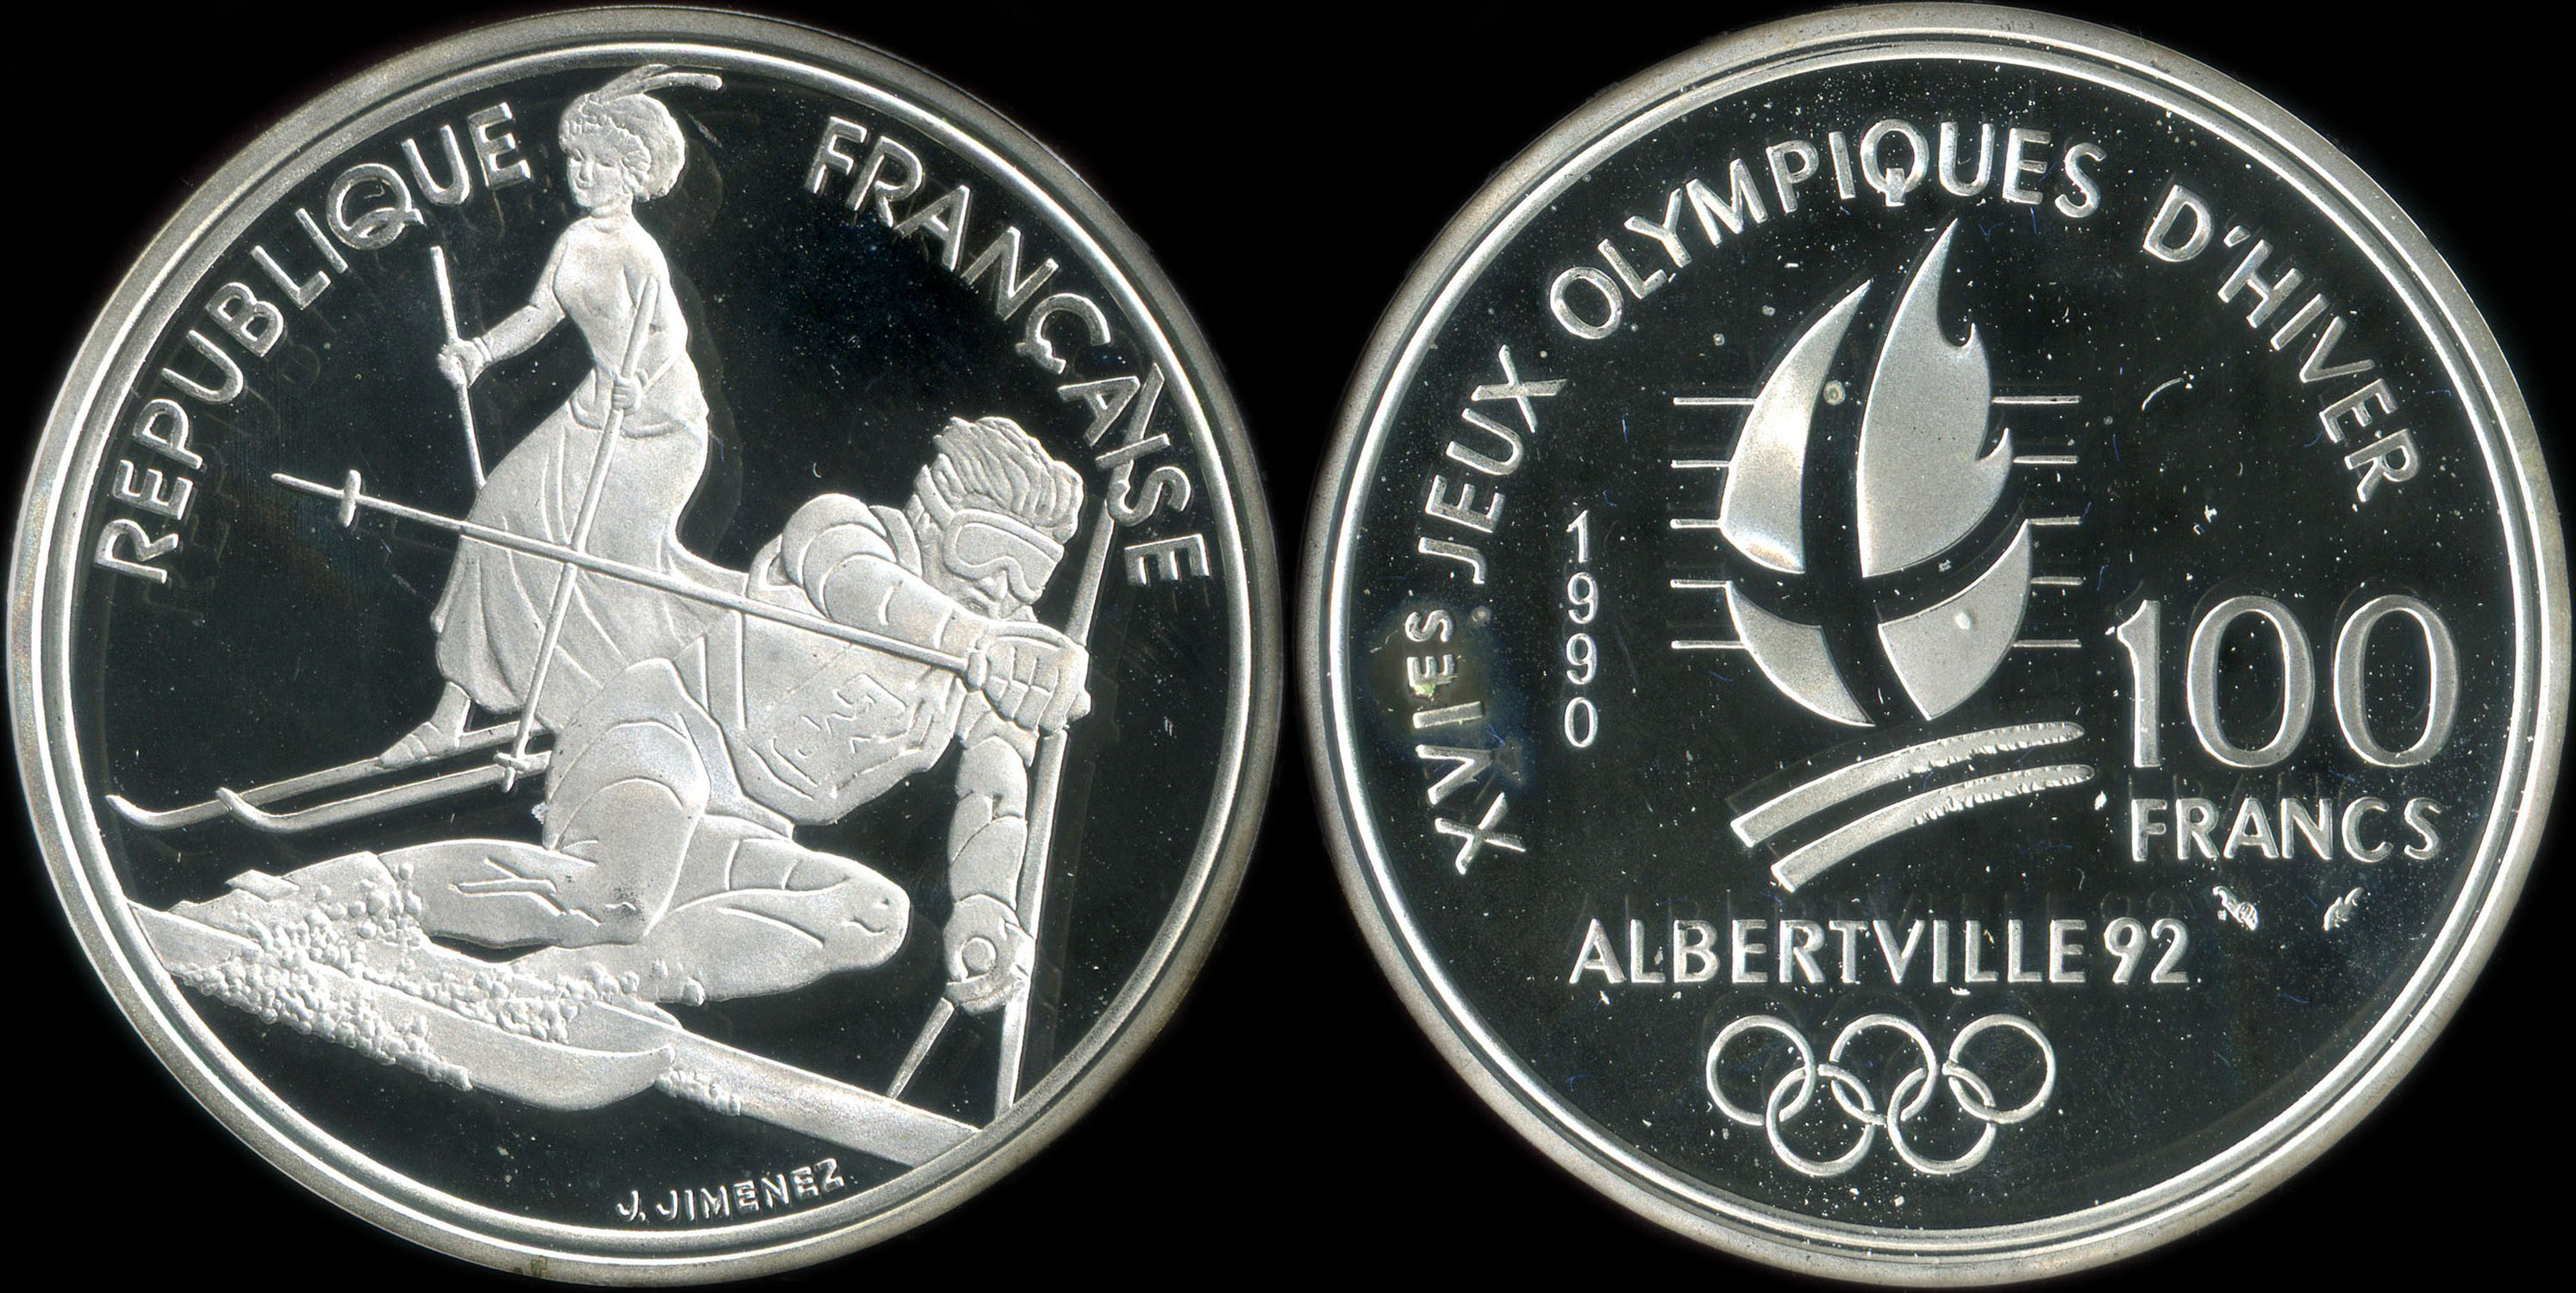 Pice de 100 francs 1990 - XVIes Jeux Olympiques d'Hiver - Albertville 92 - Slalom Moderne et Belle Epoque